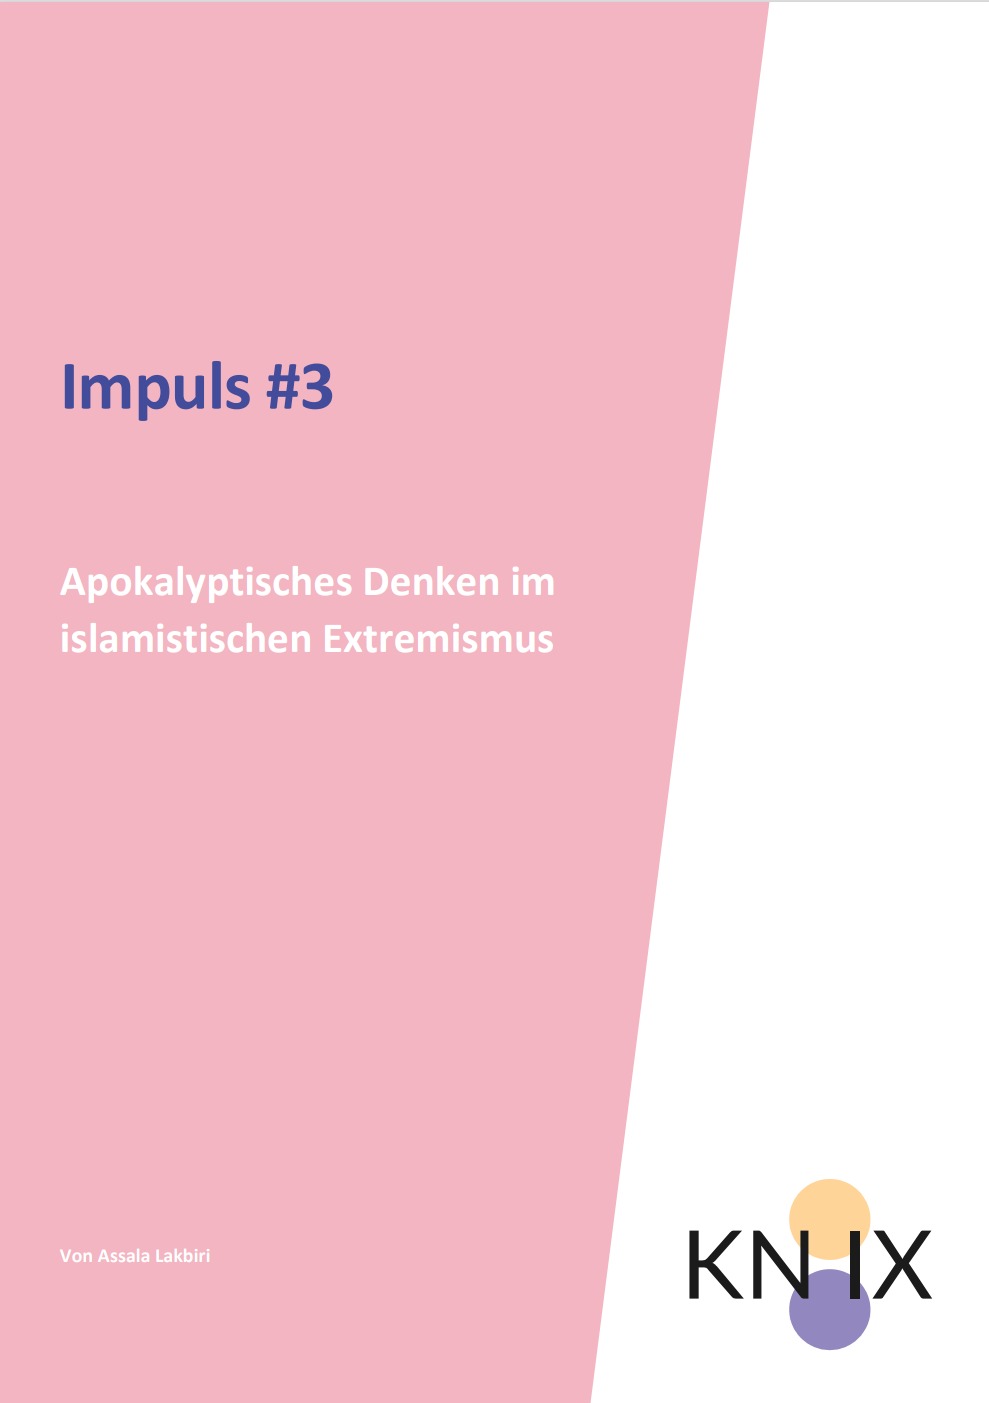 Das Bild ist in zwei Hälften geteilt. Die eine Seite ist rosa, auf der steht geschrieben Impuls #3 Apokalyptisches Denken im islamistischen Extremismus, die andere ist weiß mit dem Logo von KN:IX